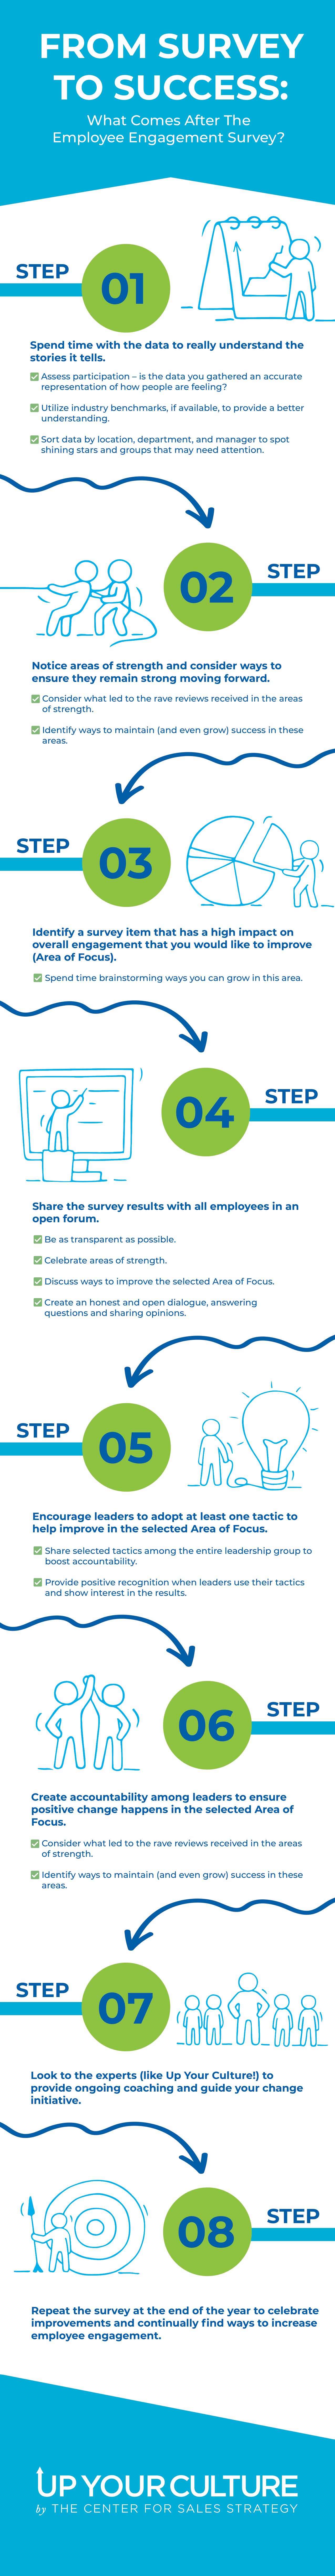 UYC engagement survey infographic_V2